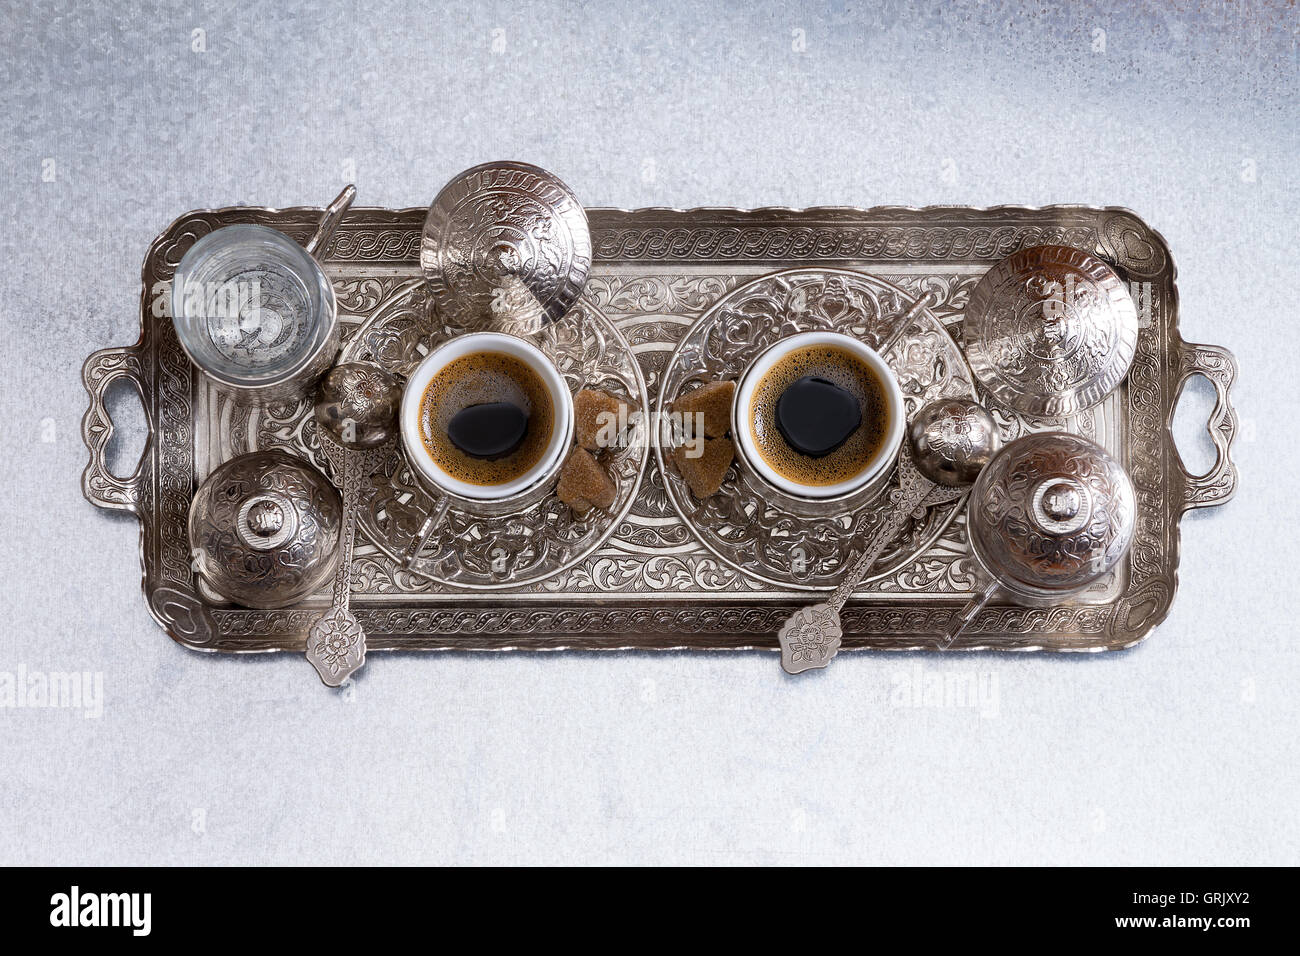 Le café turc pour deux servi sur un plateau de métal avec un des motifs traditionnels et des tasses et soucoupes, overhead view cen Banque D'Images